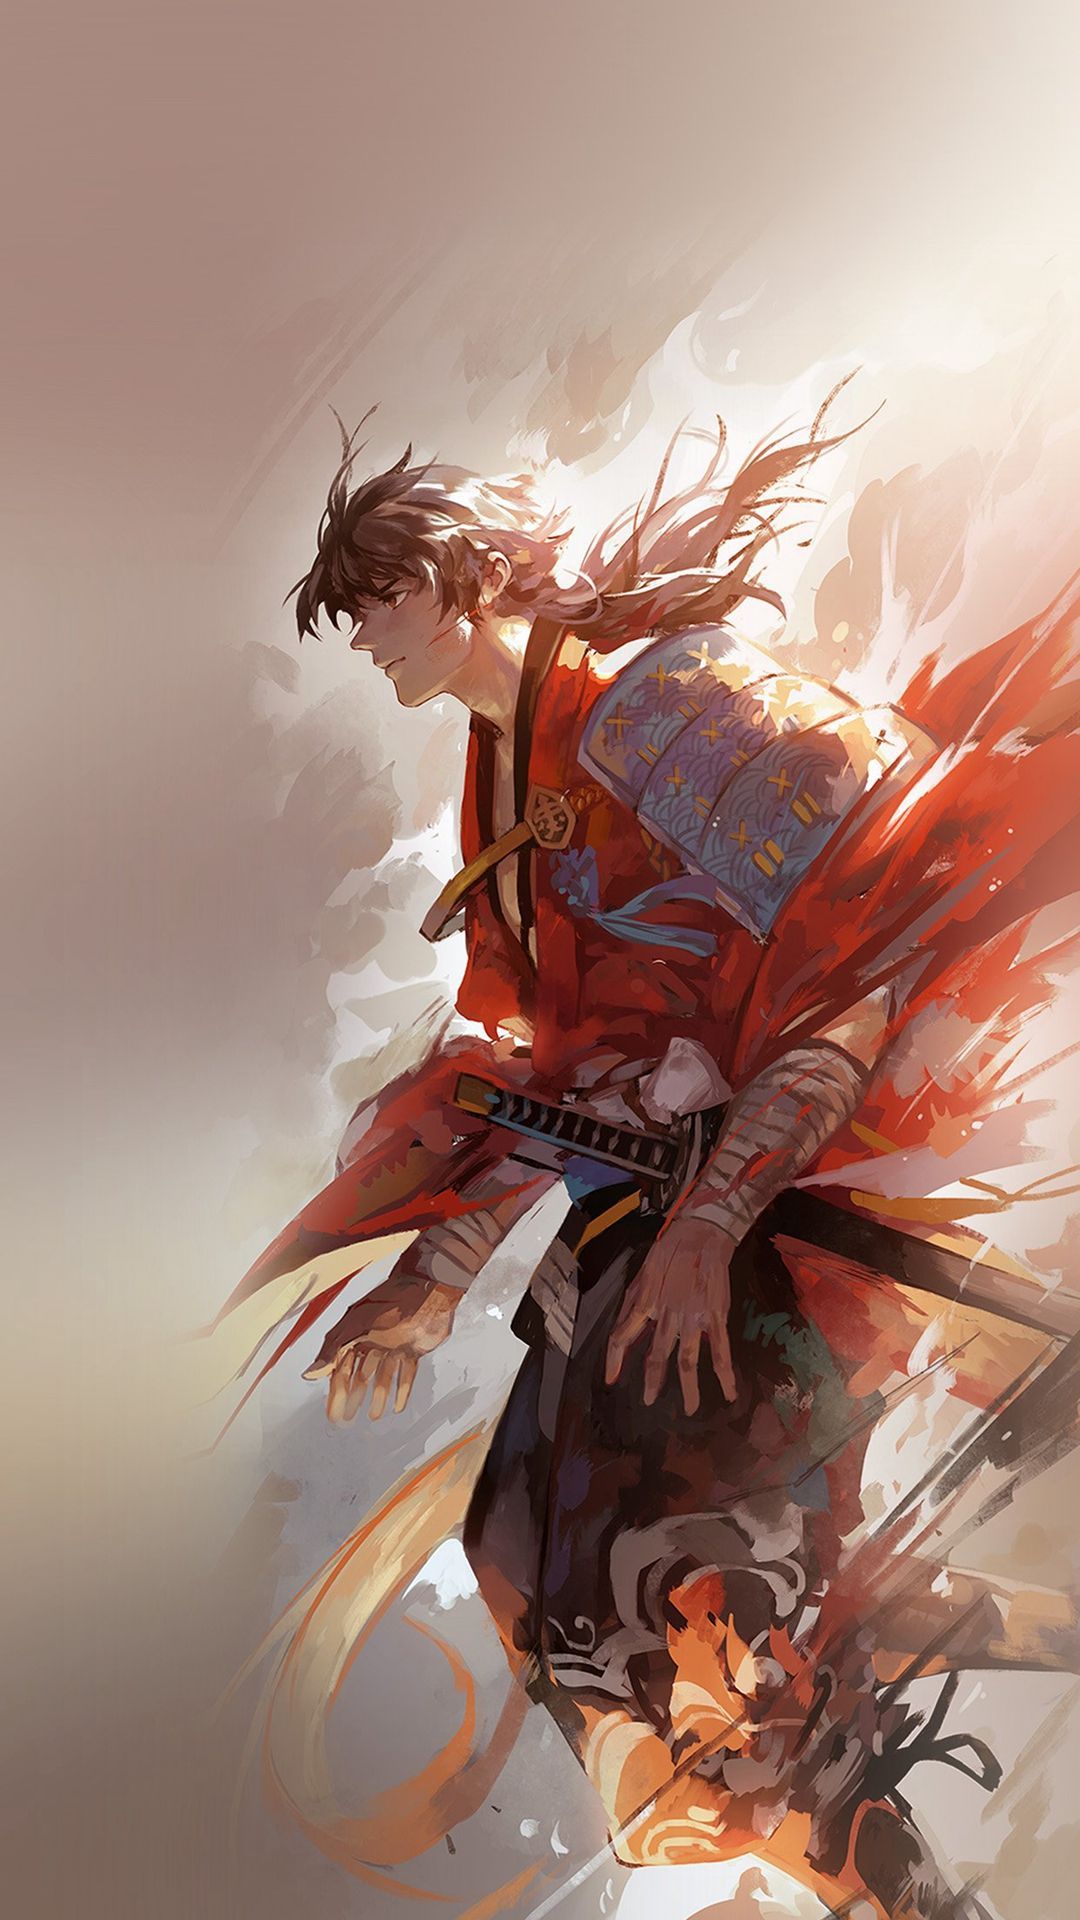 Anime swordsman 2 by TheRenderKnight on DeviantArt-demhanvico.com.vn